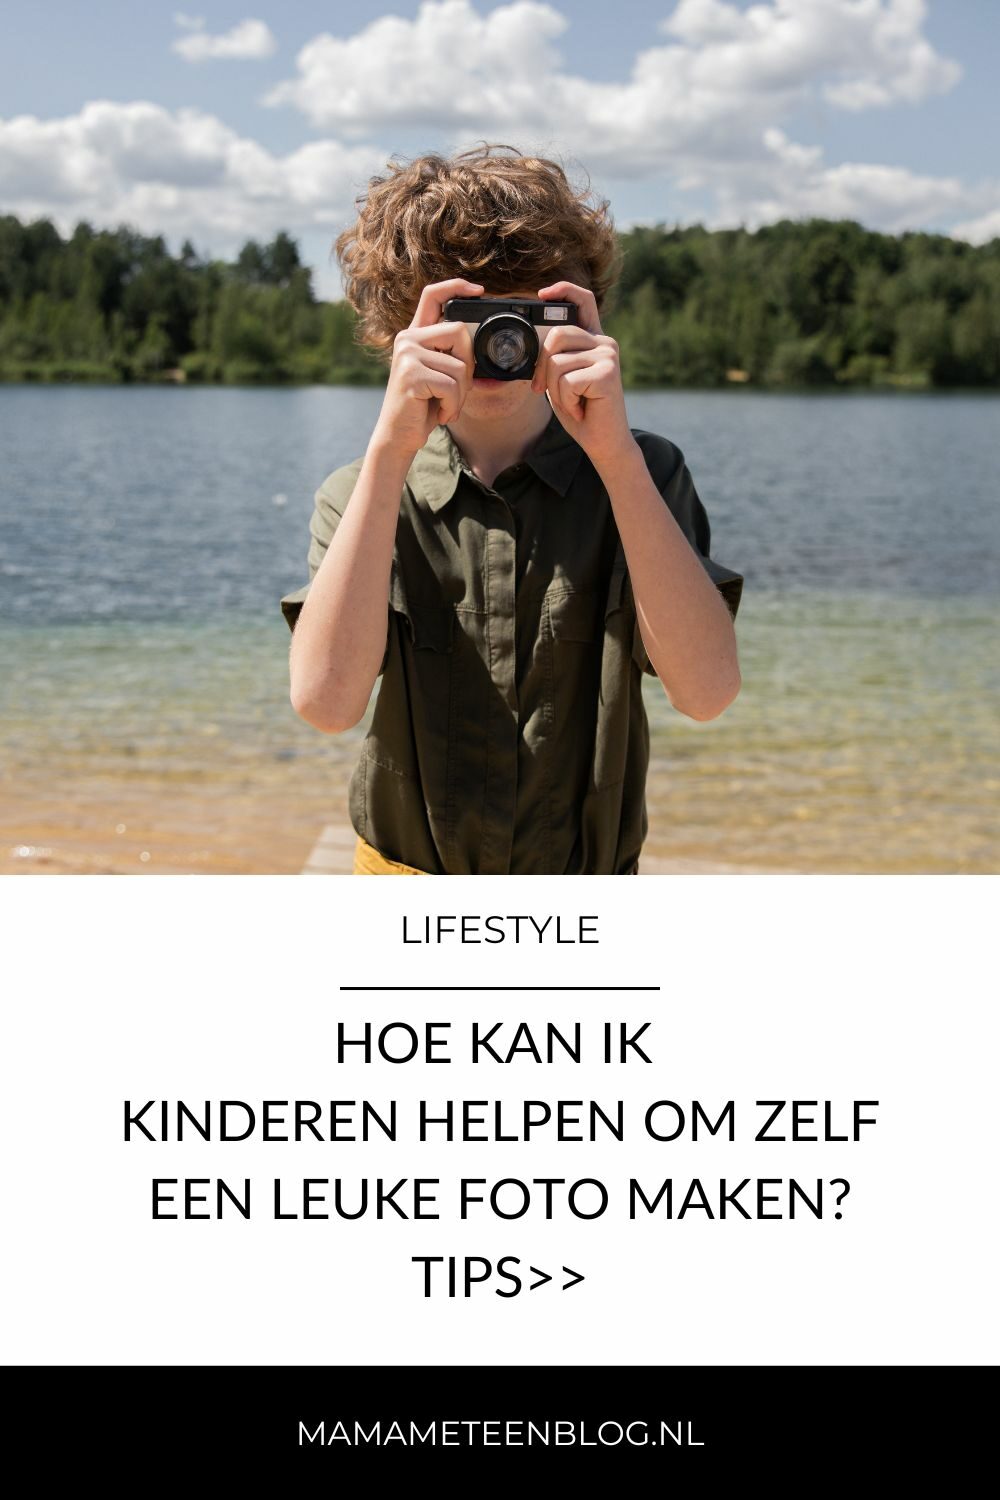 Tips kinderen helpen om zelf foto maken mamameteenblog.nl